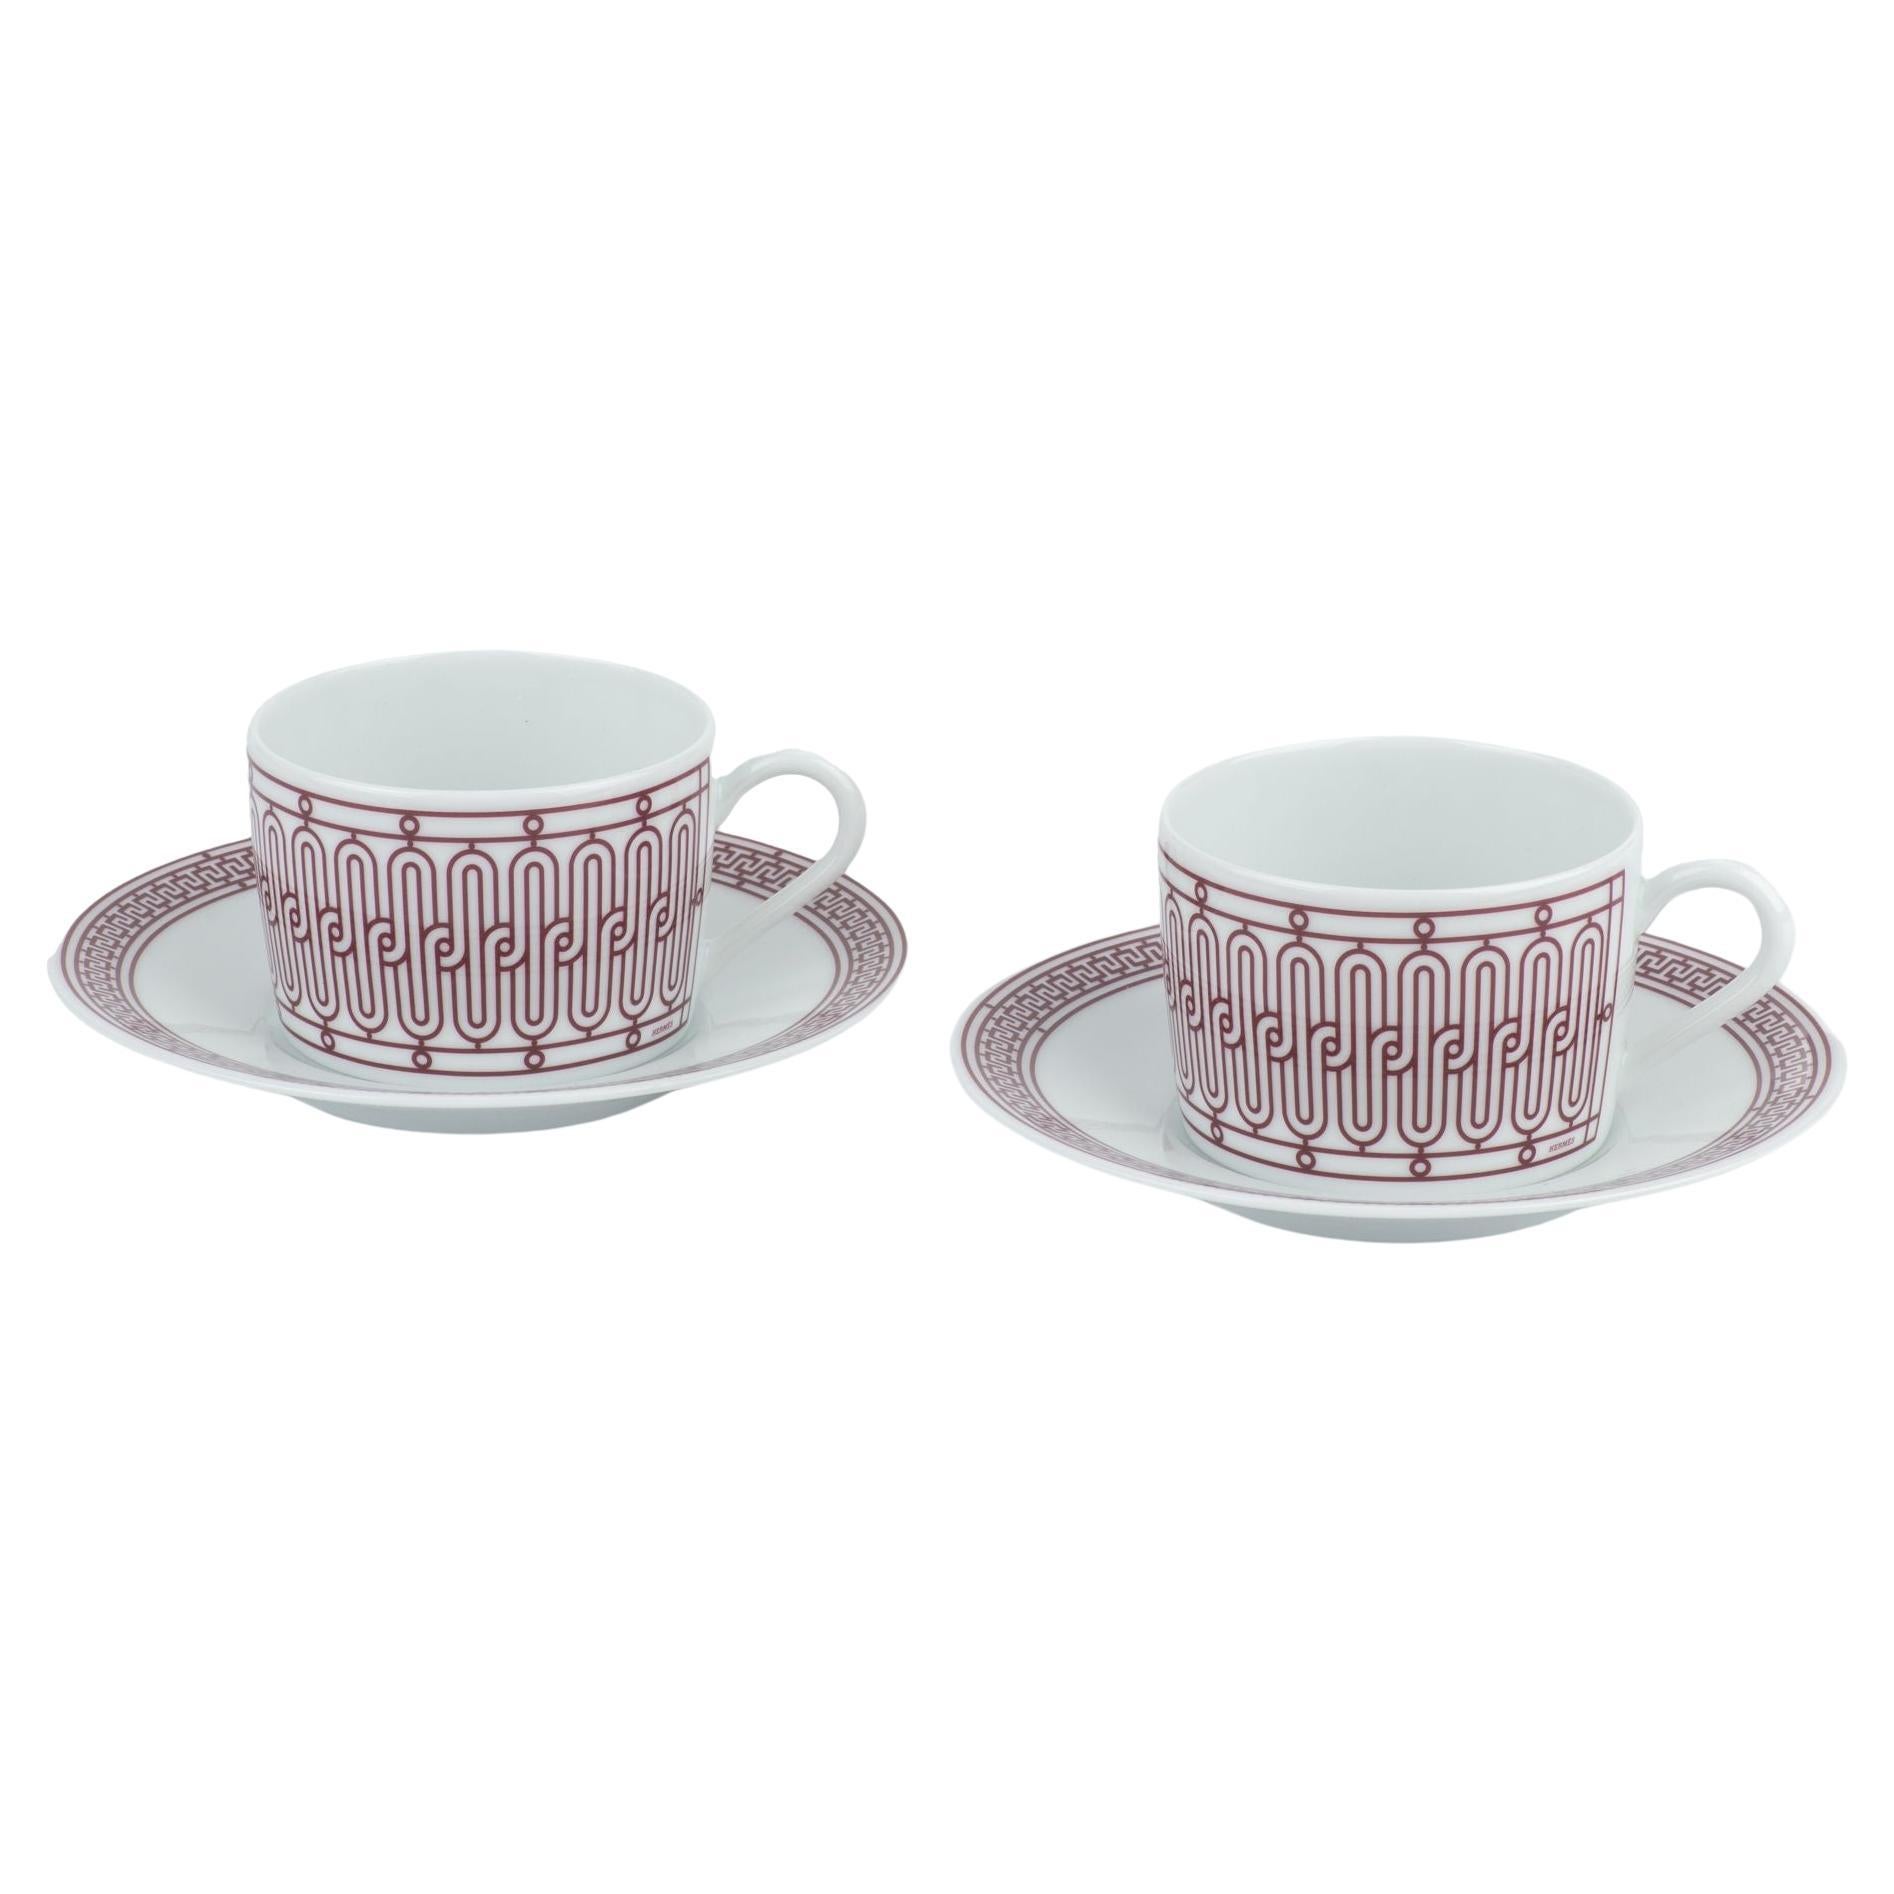 Le set de deux tasses à thé et soucoupes en porcelaine H Deco d'Hermès en rouge. L'ensemble présente un design géométrique audacieux avec un logo Hermès. Neuf .
Livré avec livret, ruban et boîte d'origine.